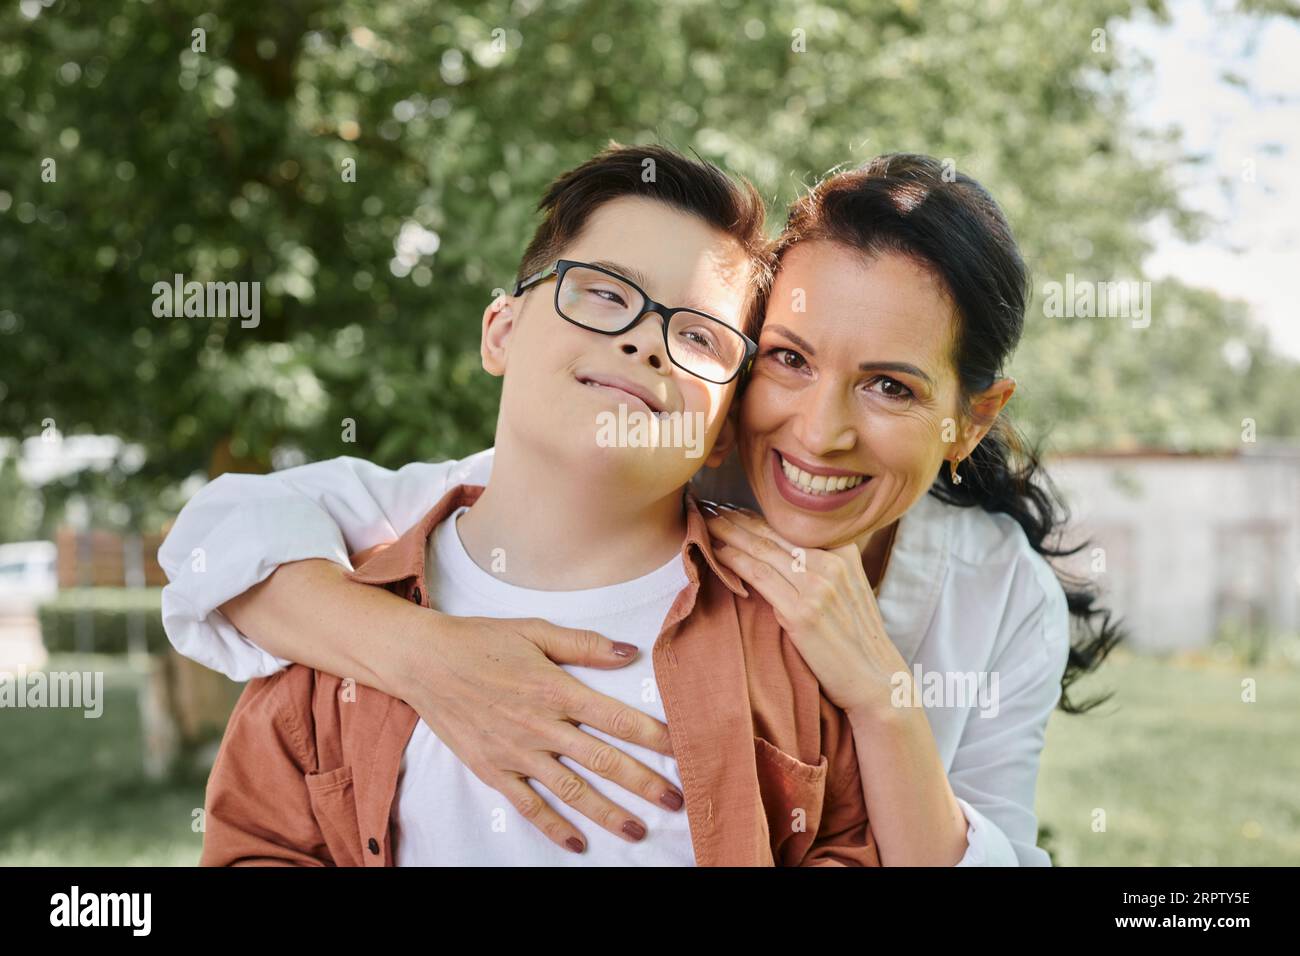 Glückliche Frau mittleren Alters, die einen Jungen mit Down-Syndrom umarmt und im Park lächelt, besondere Familie Stockfoto